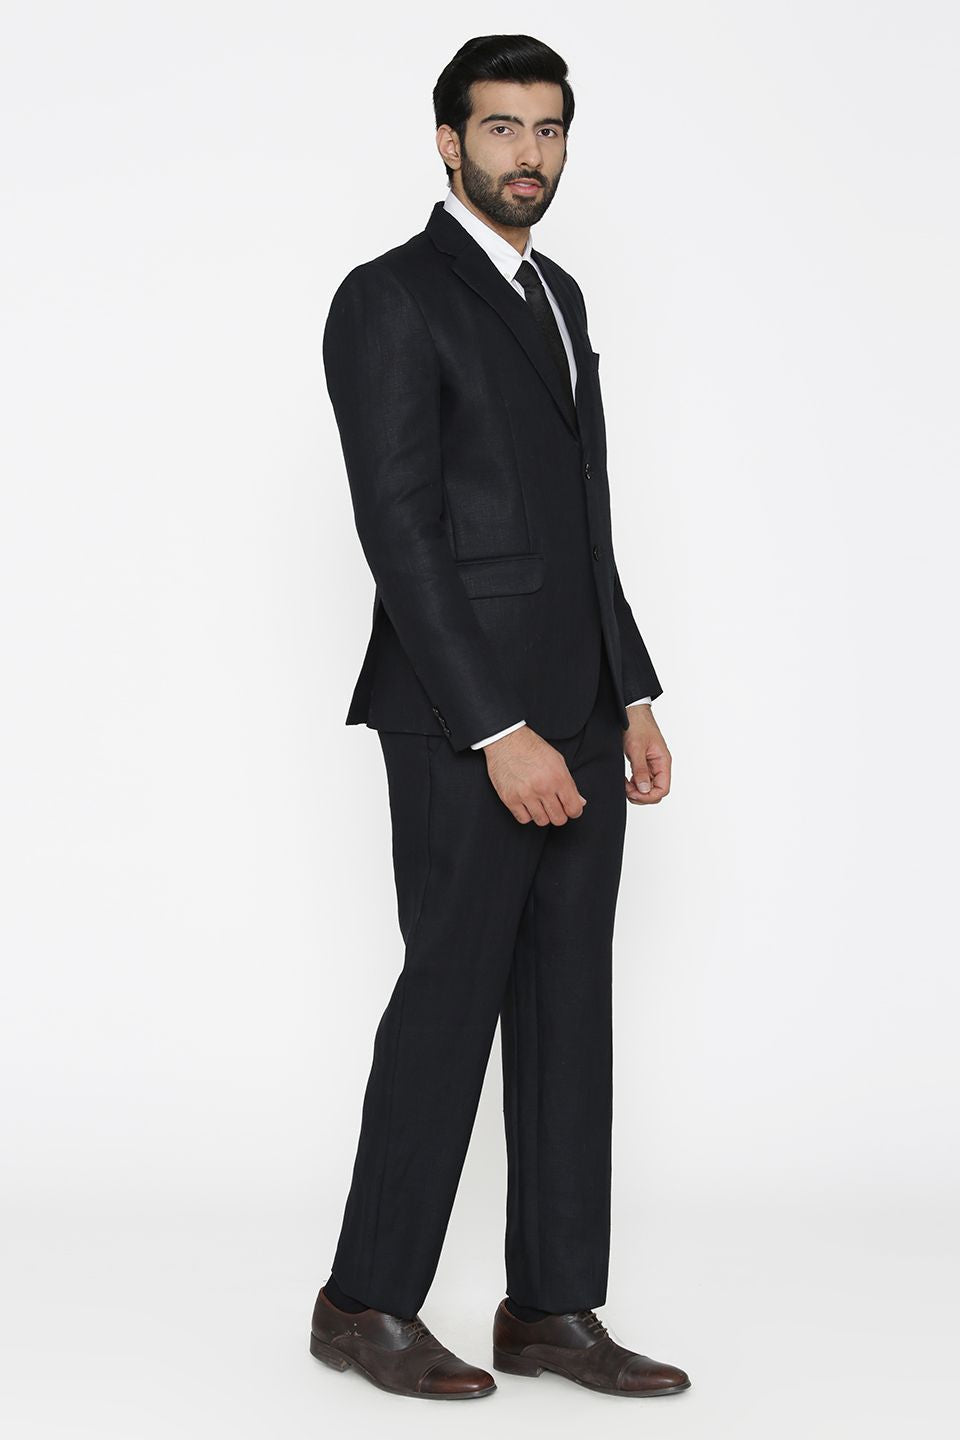 100% Linen Black Suit